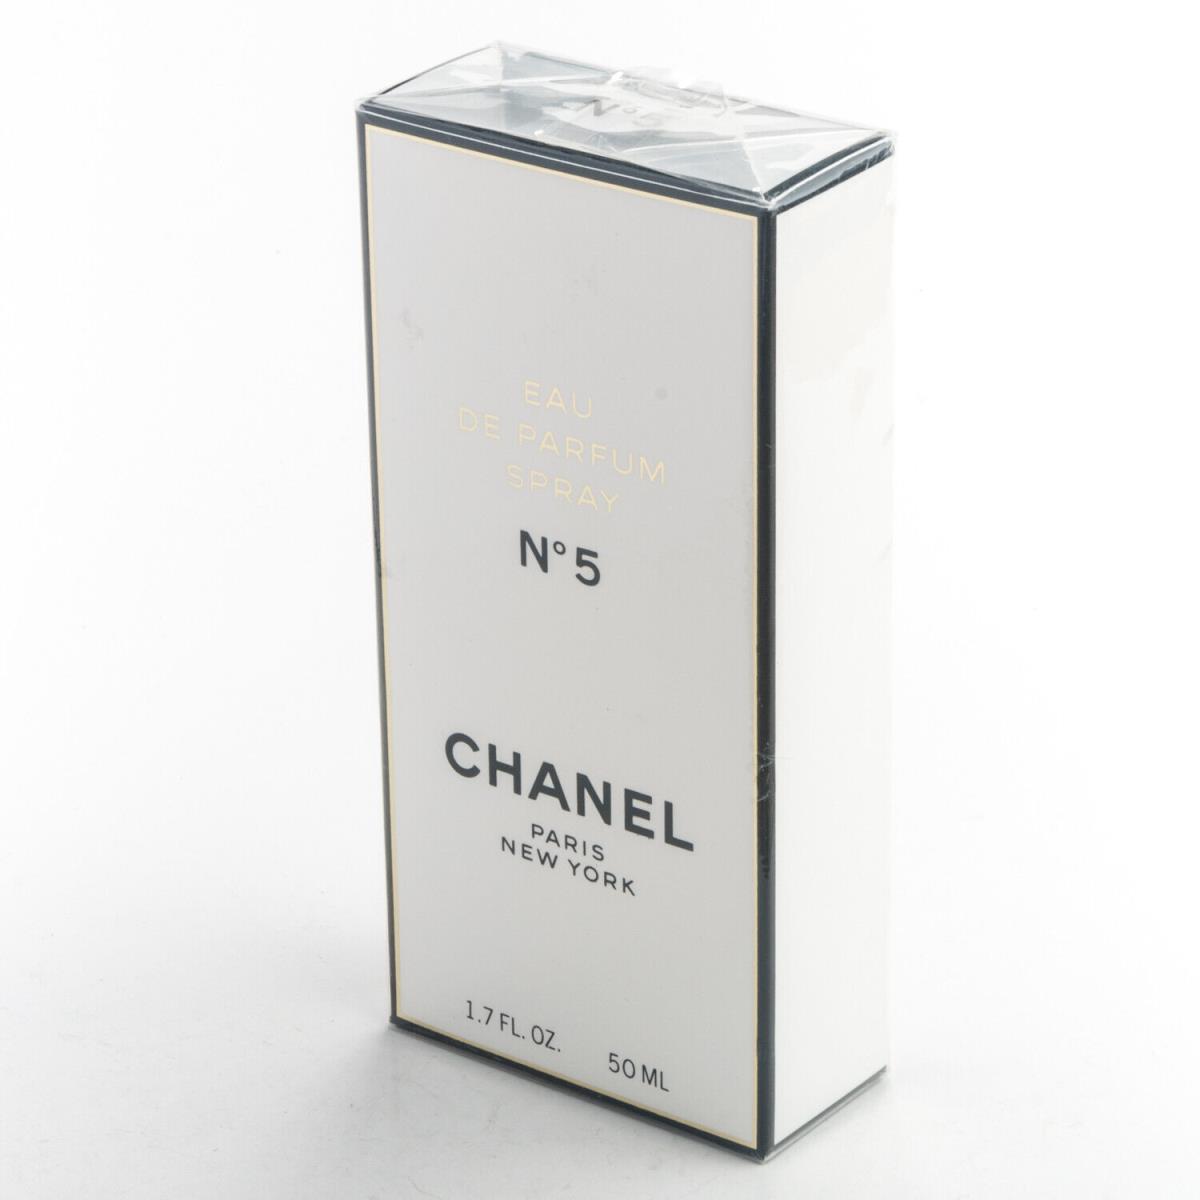 Chanel No5 Edp Eau de Parfum 1.7OZ 50ml Spray No 5 Vintage Box